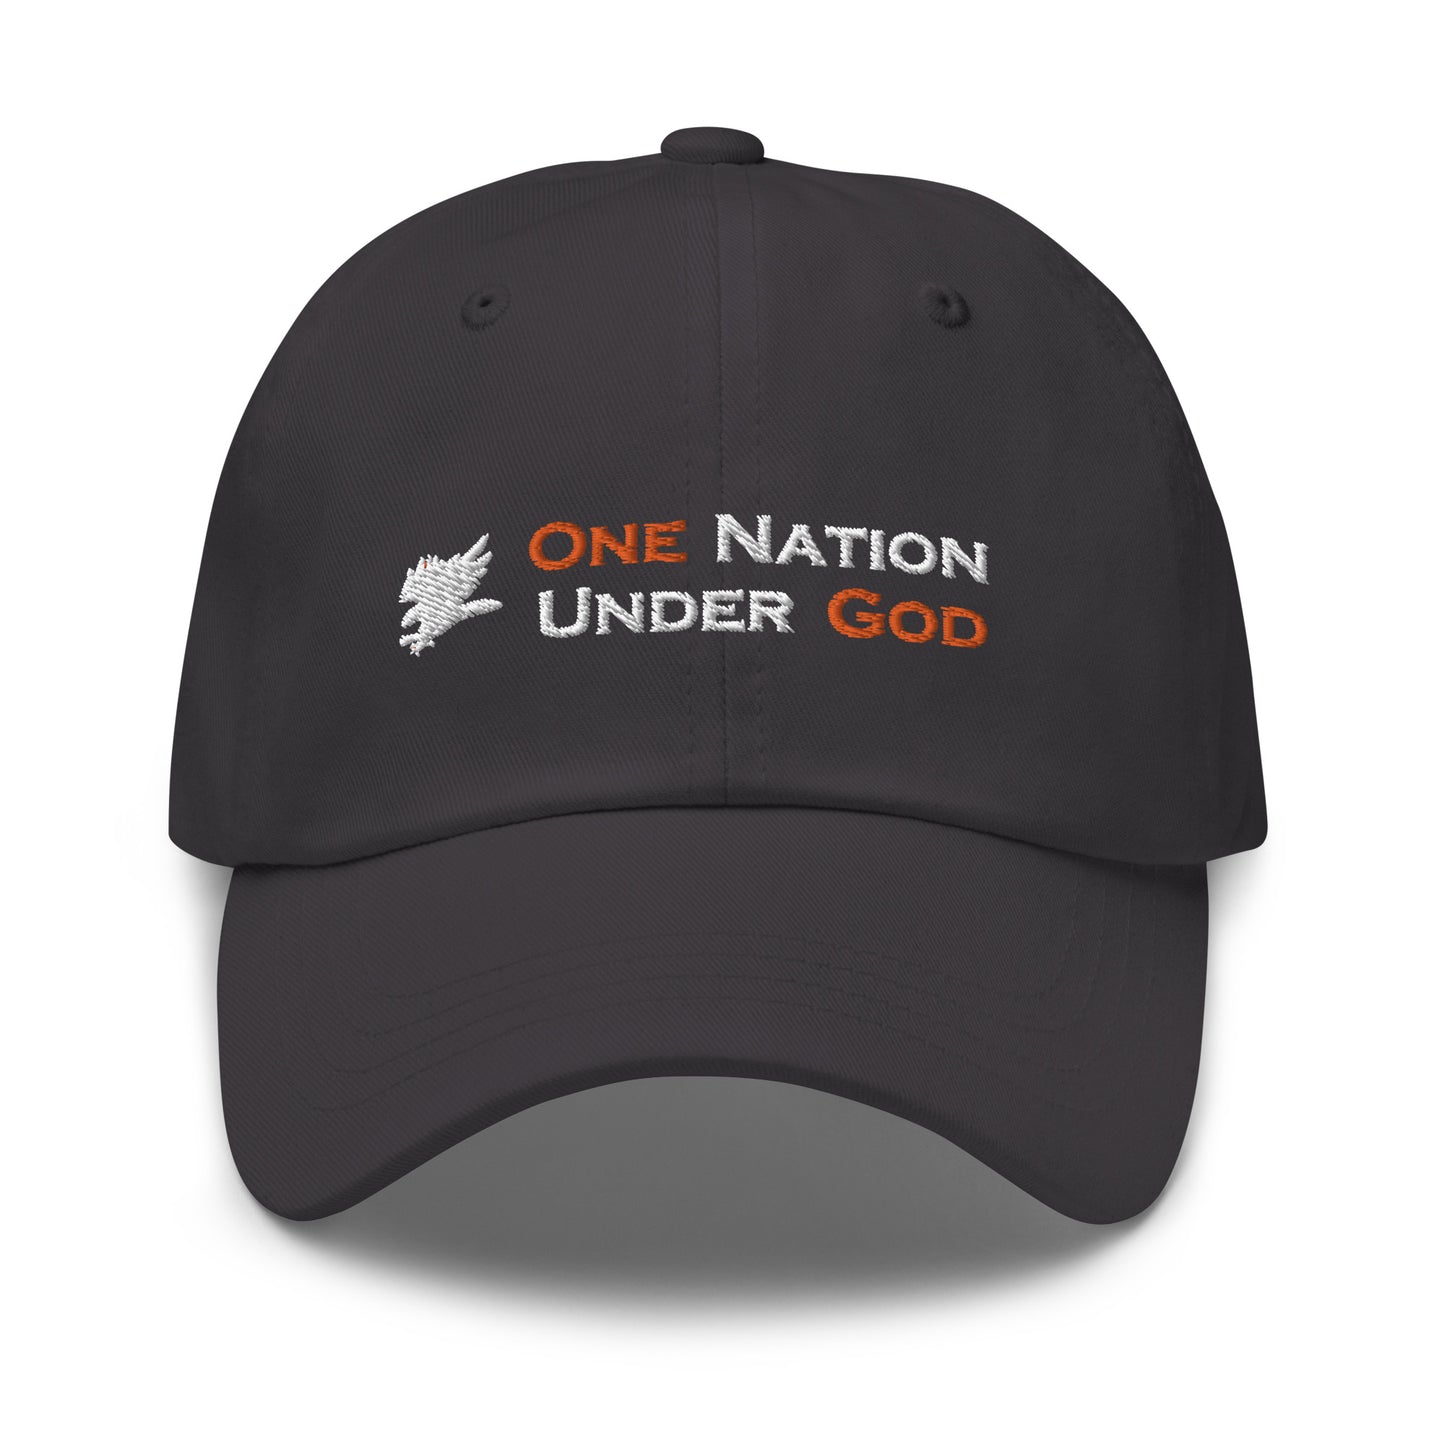 One Nation Under God hat